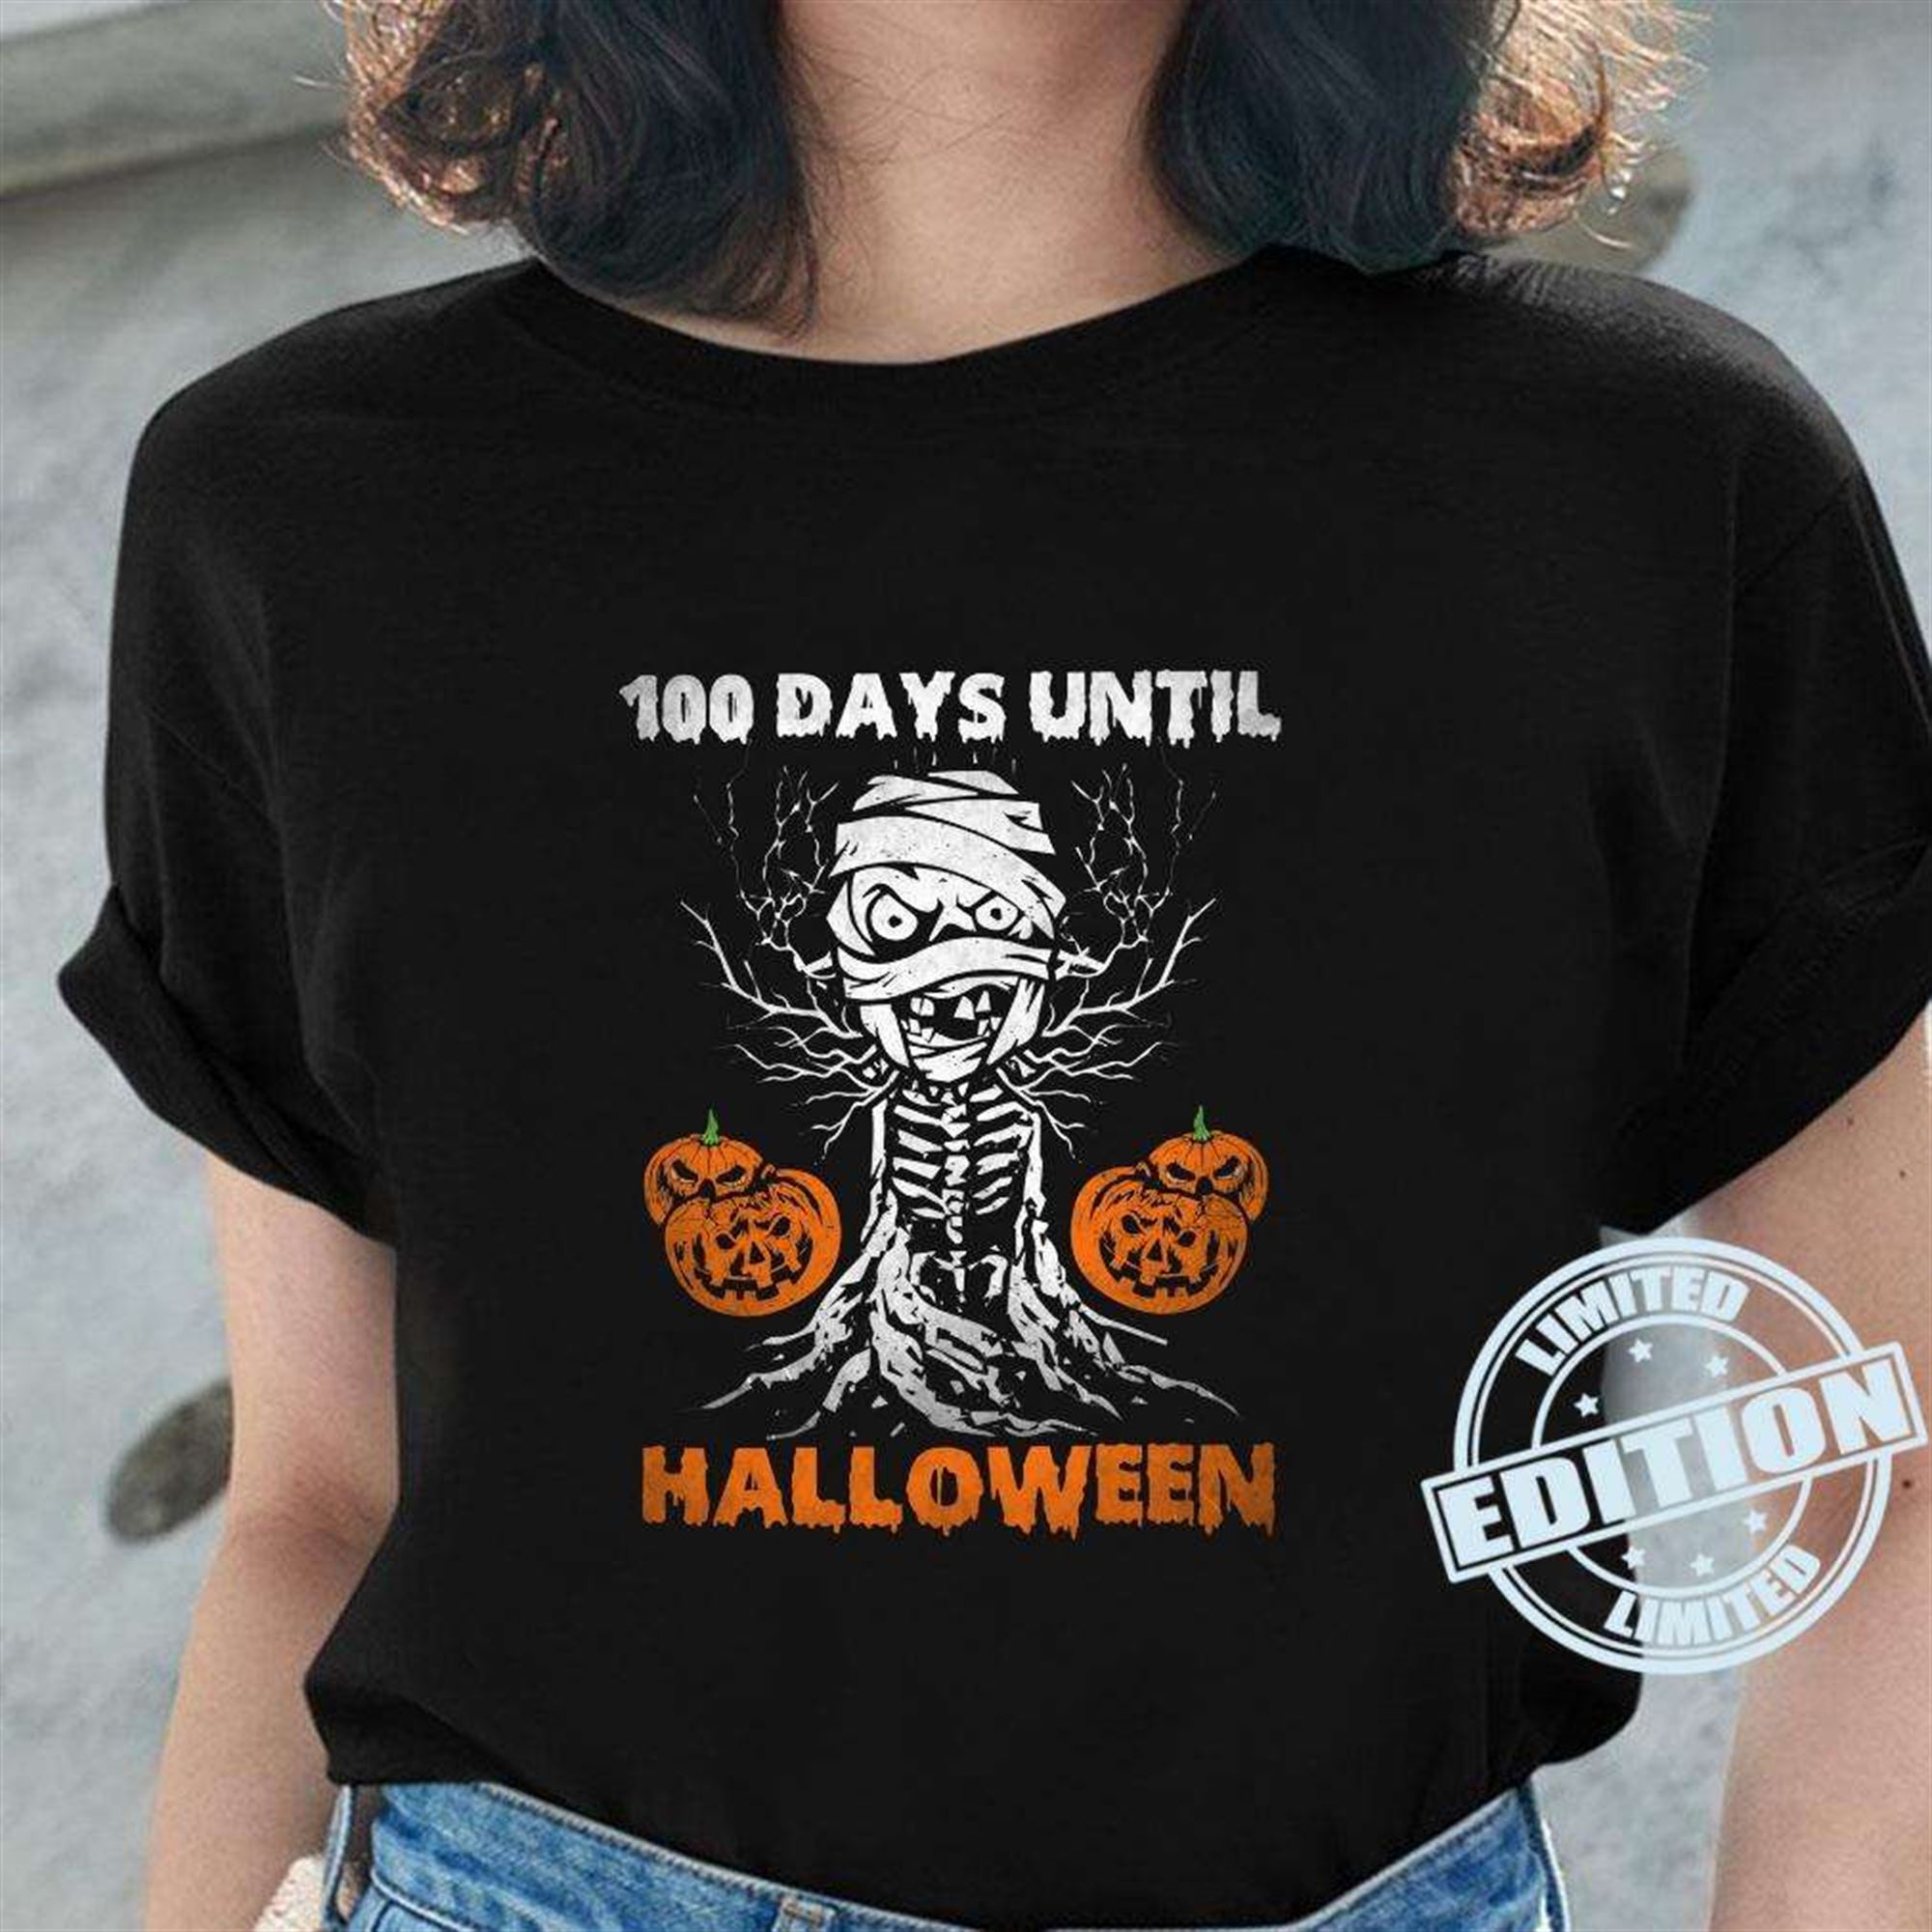 100 Days Until Halloween Shirt Halloween Pumpkin Costume T-shirt Plus Size Up To 5xl